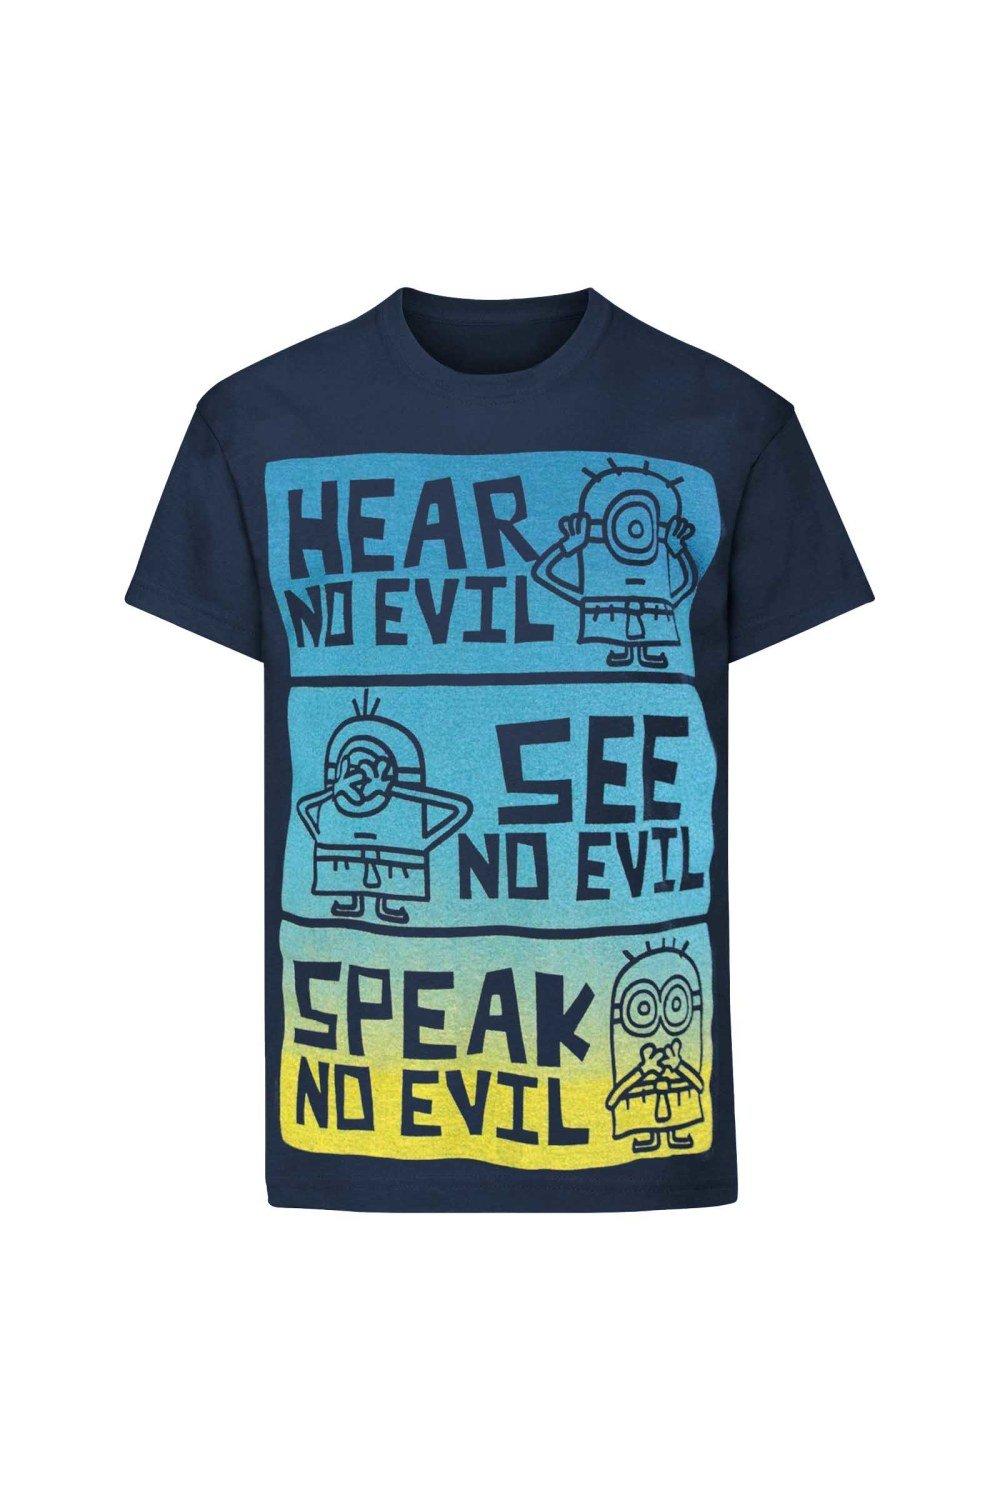 Official No Evil T-Shirt